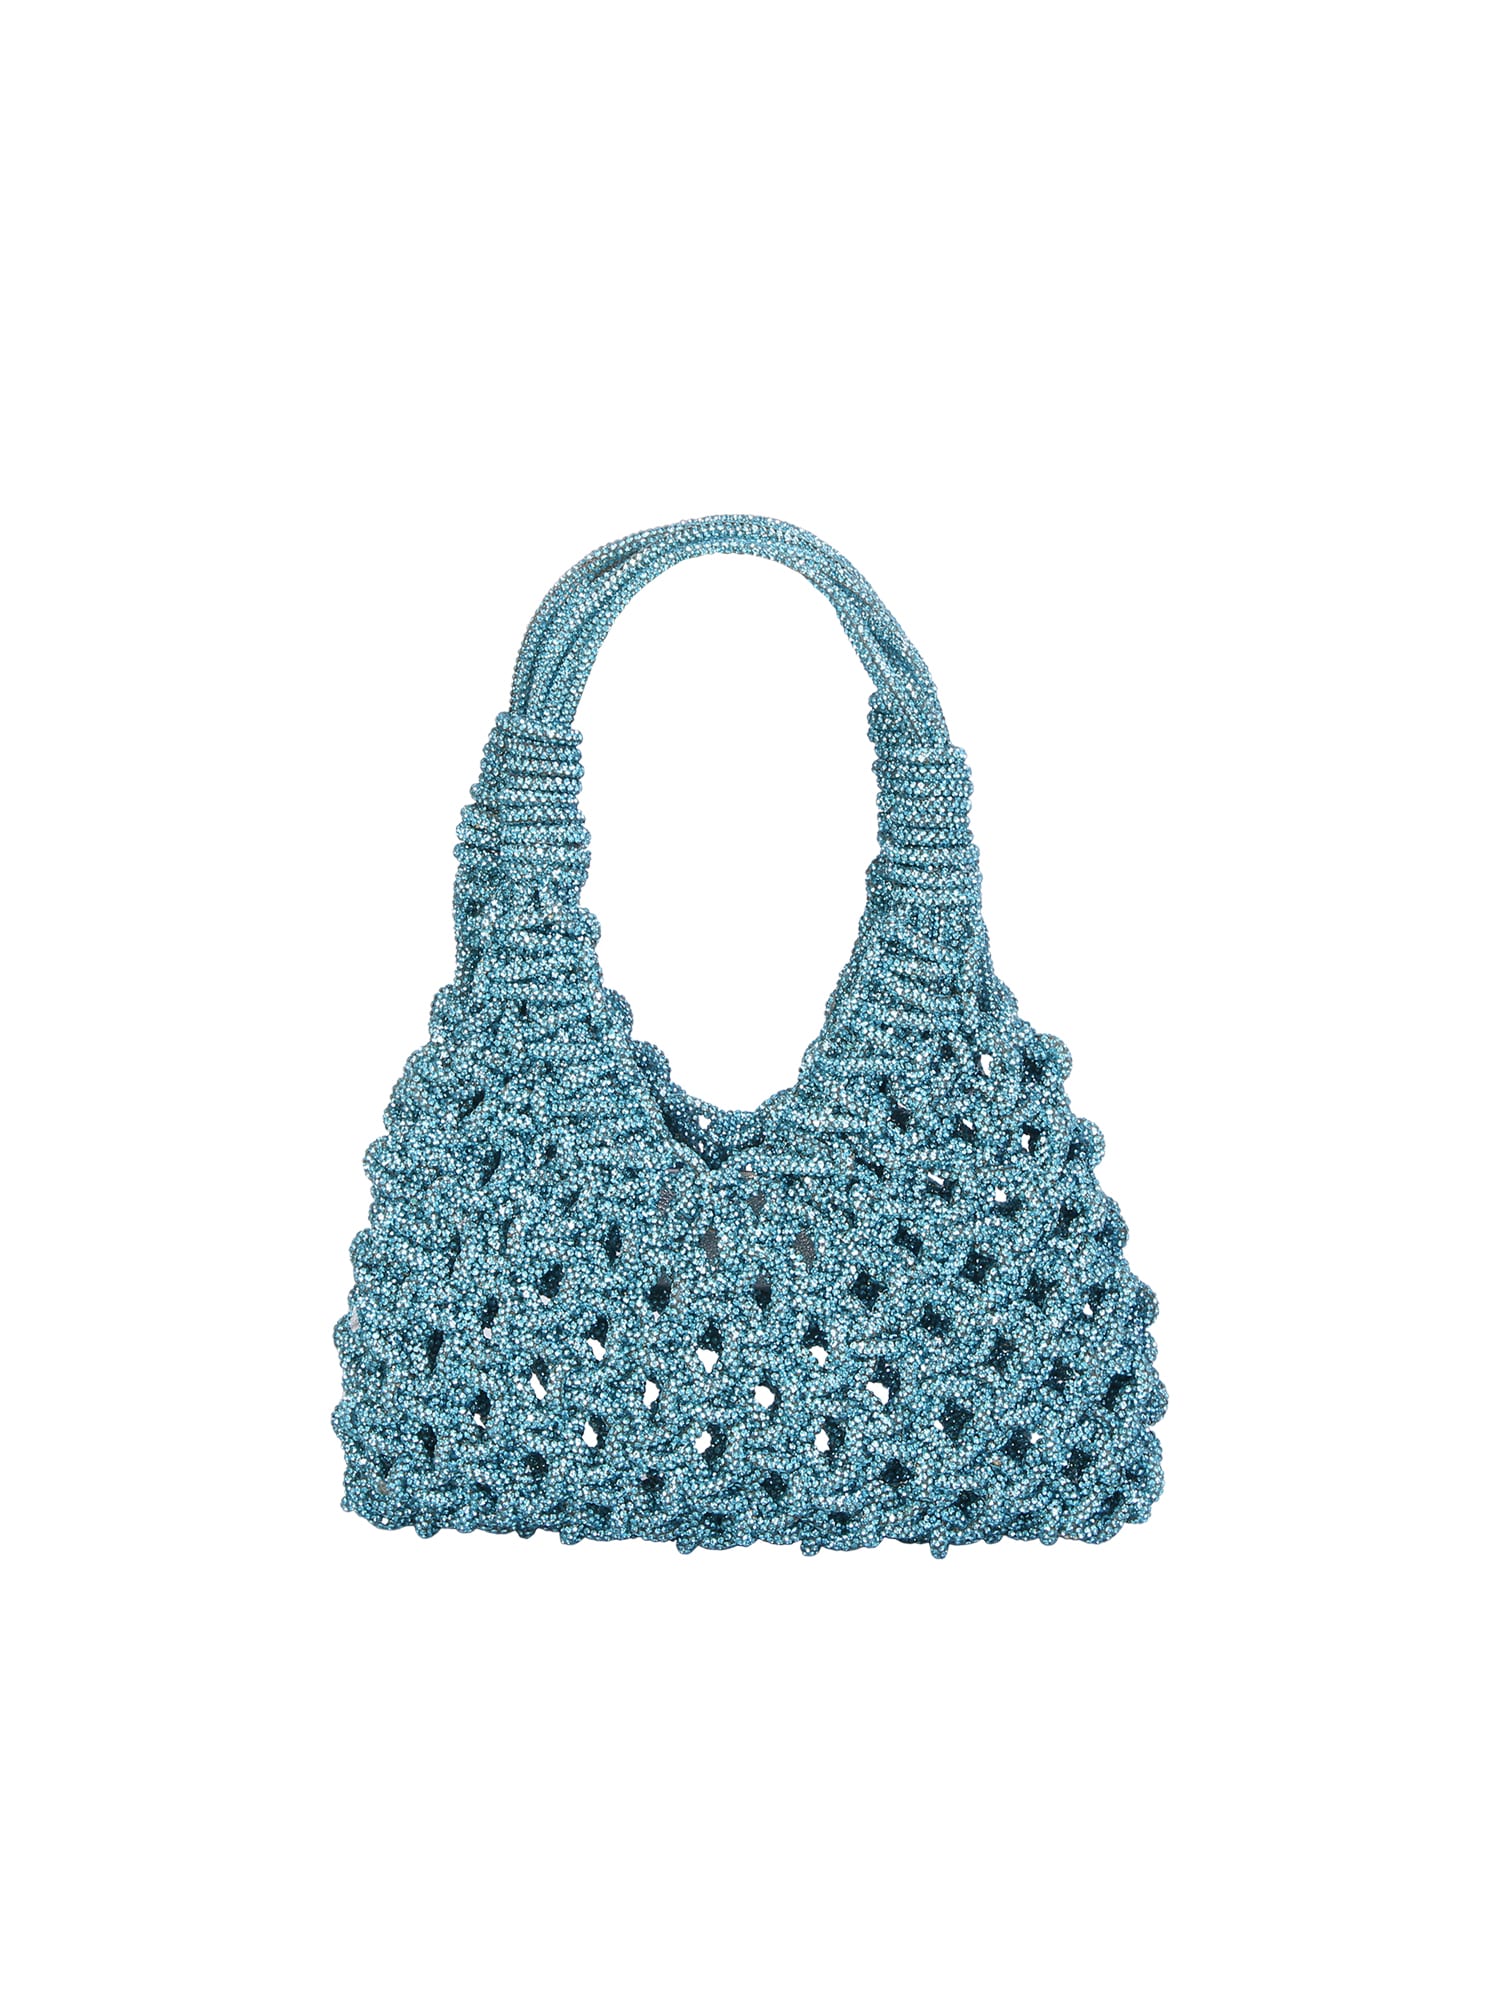 Vannifique Small Aquamarinel Bag